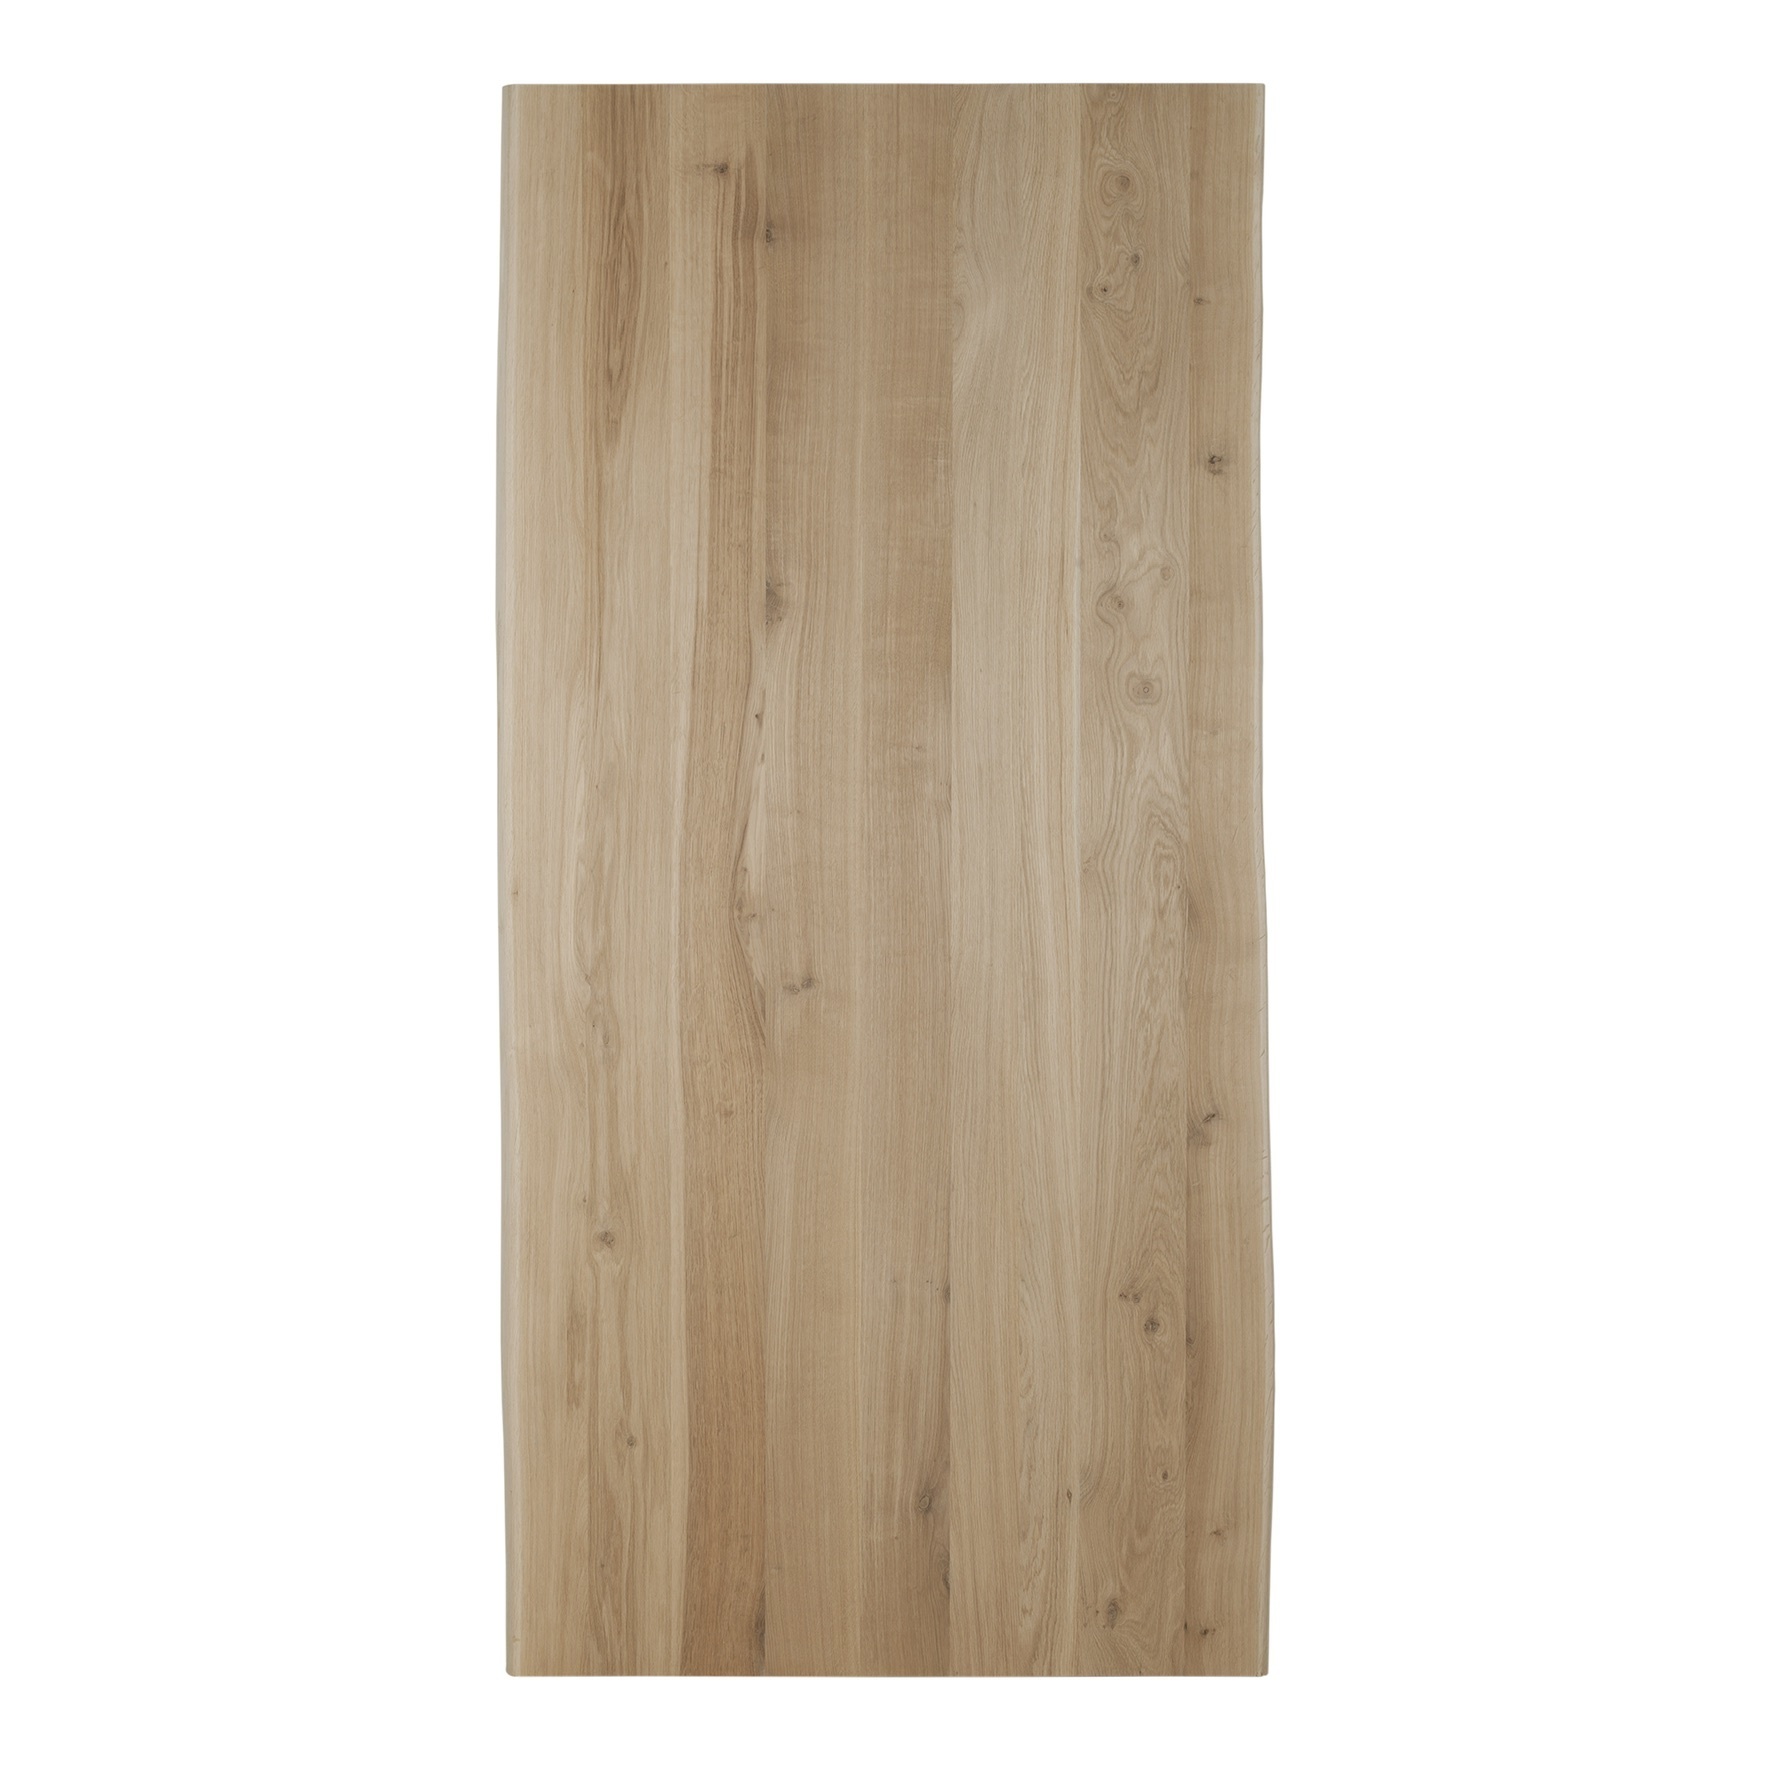 Wood & Work Houten tafelblad salontafel - 4cm dik eiken - Boomstam afwerking